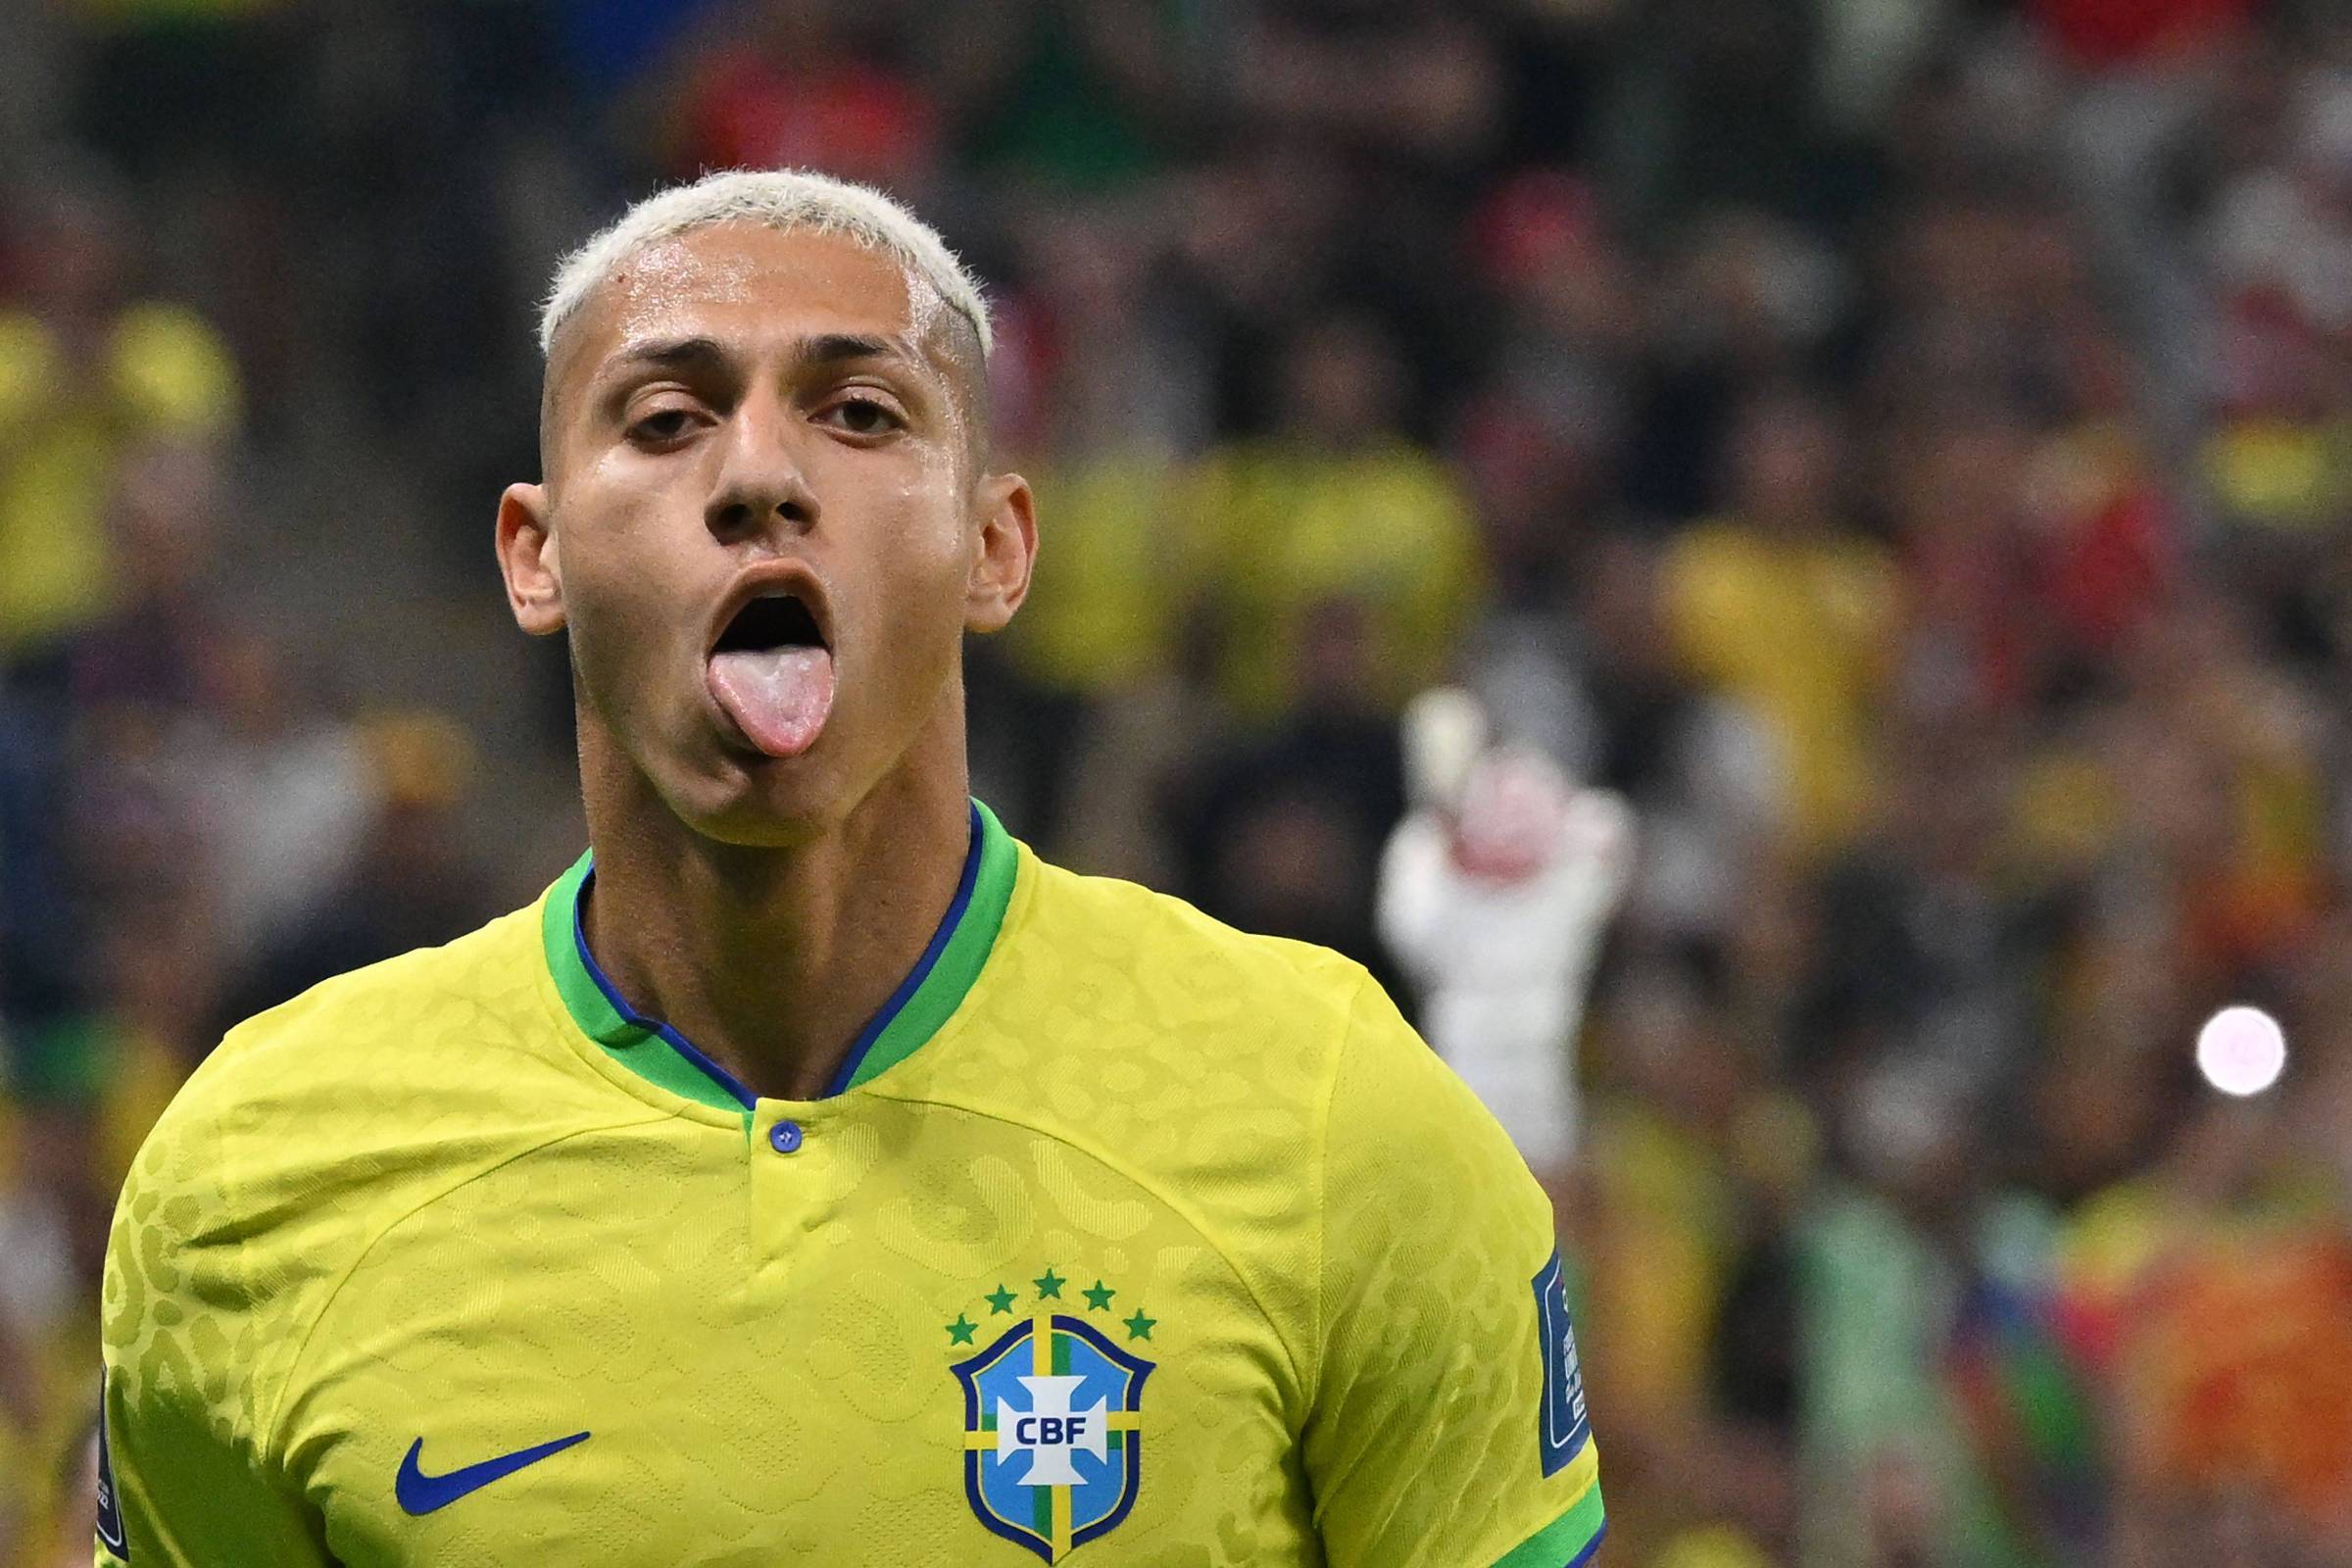 Editorial: Em busca de uma seleção de futebol realmente brasileira